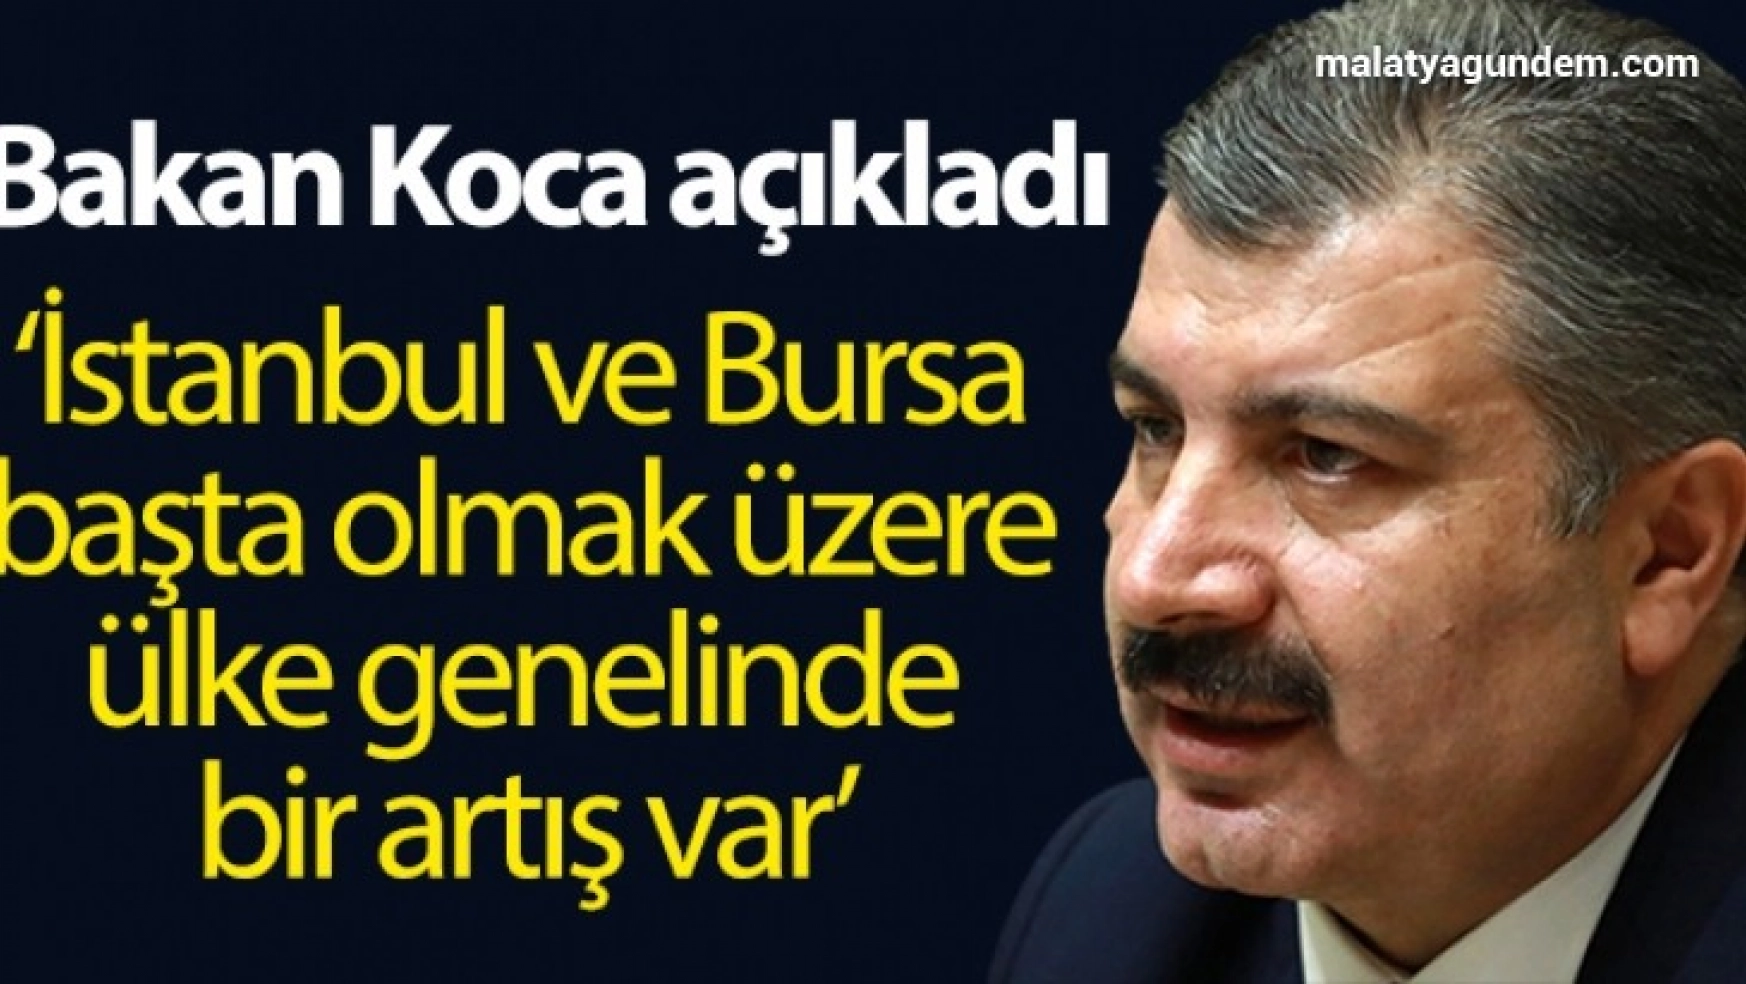 Sağlık Bakanı Koca: 'İstanbul ve Bursa başta olmak üzere ülke genelinde bir artış eğilimi görüyoruz'